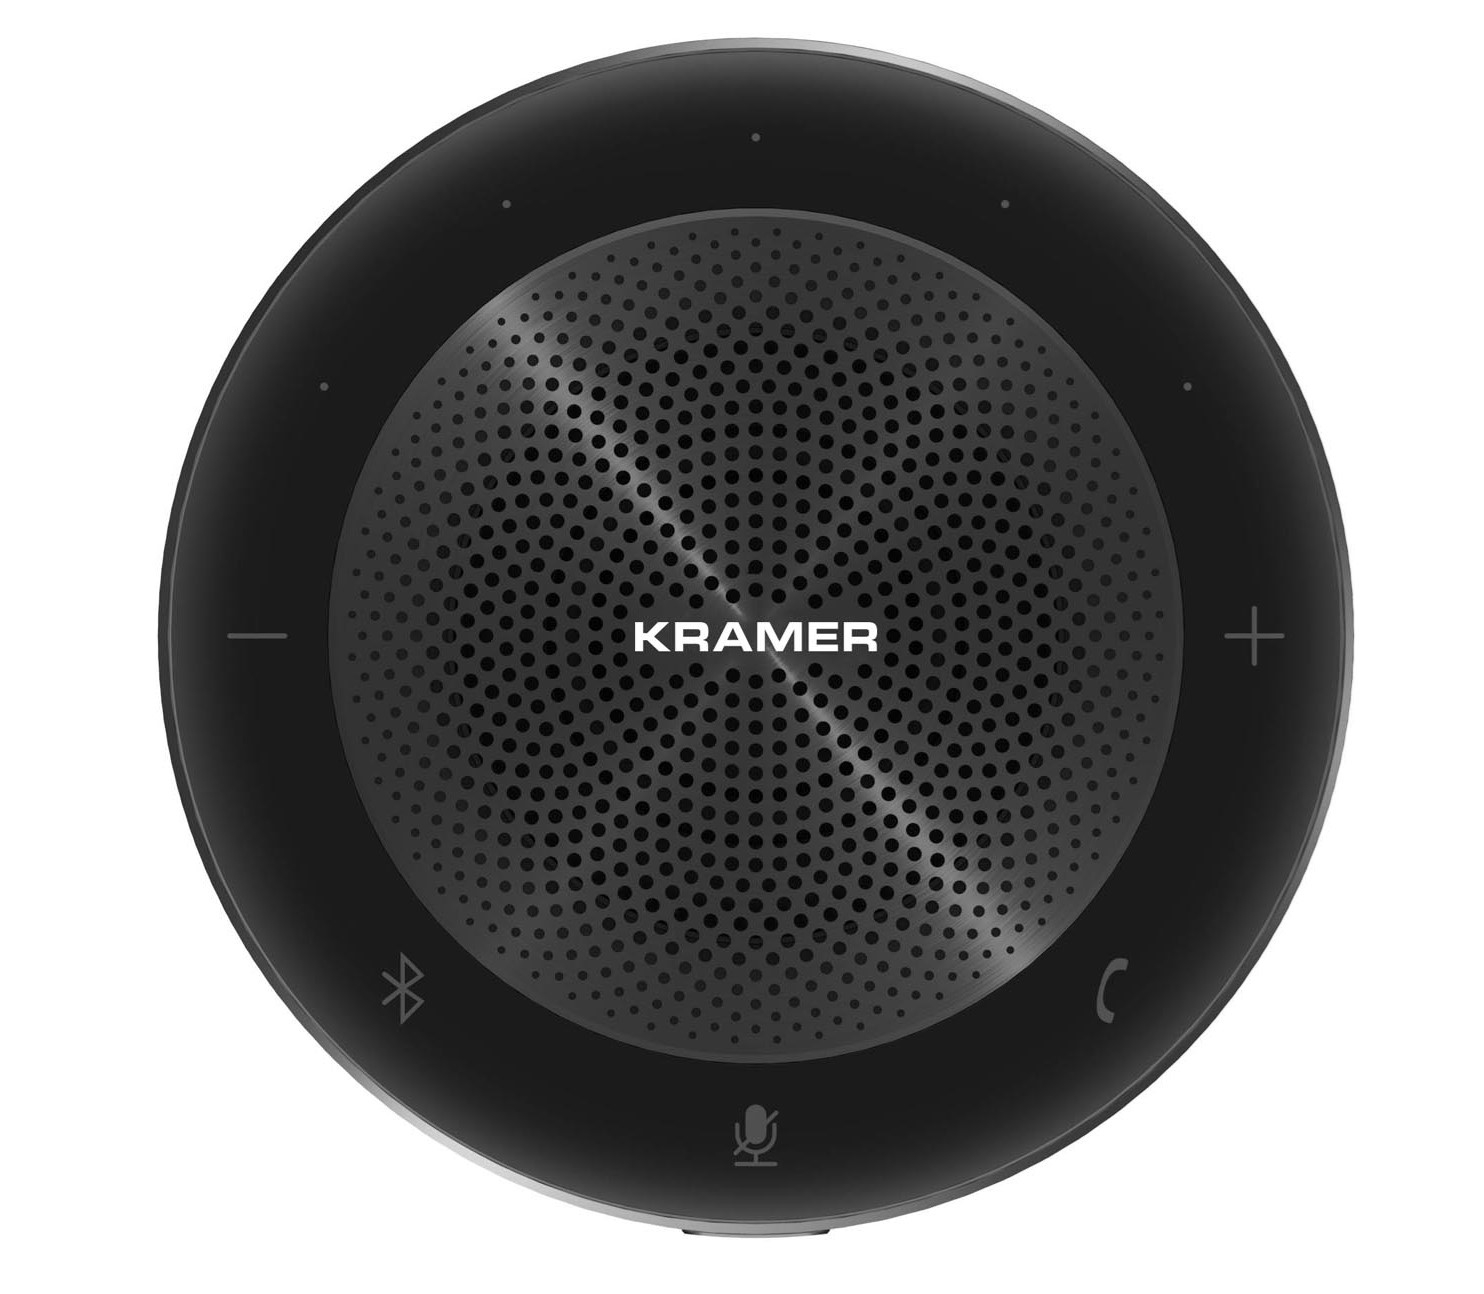 Kramer K-Speak - Всенаправленный спикерфон с 6-точечным микрофонным массивом, подключение по аудиокабелю, Bluetooth и USB